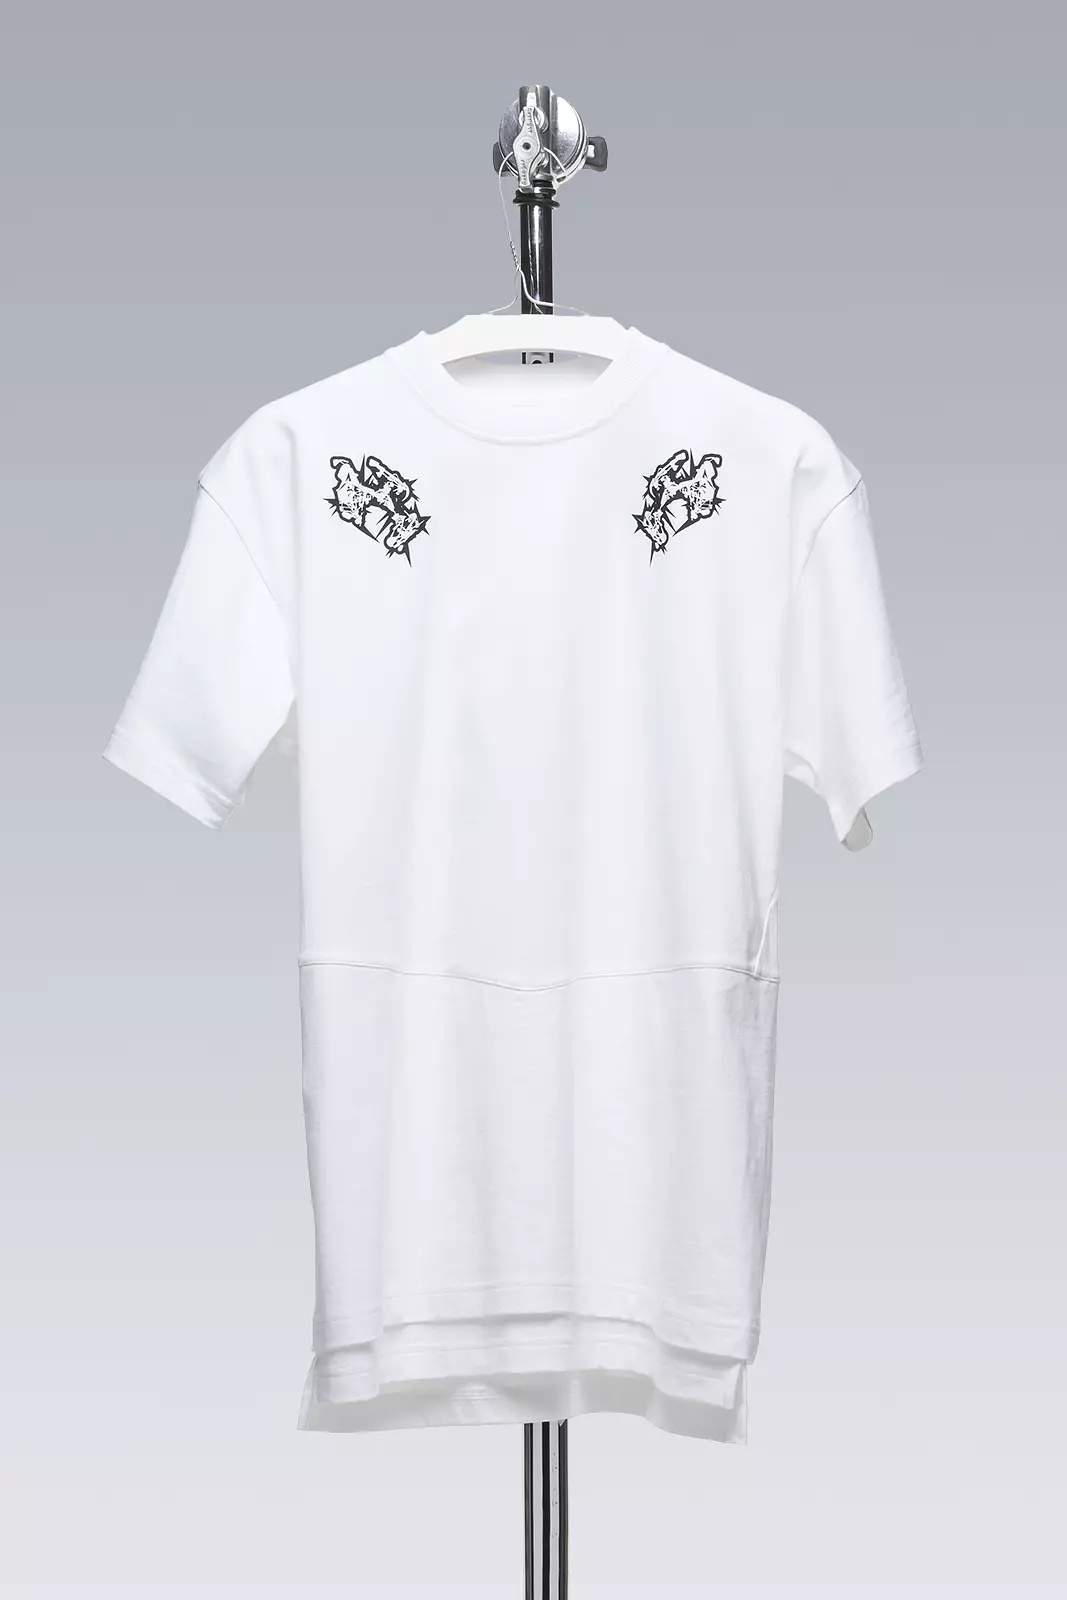 S28-PR-A 100% Orgnaic Cotton Short Sleeve T-shirt White - 1